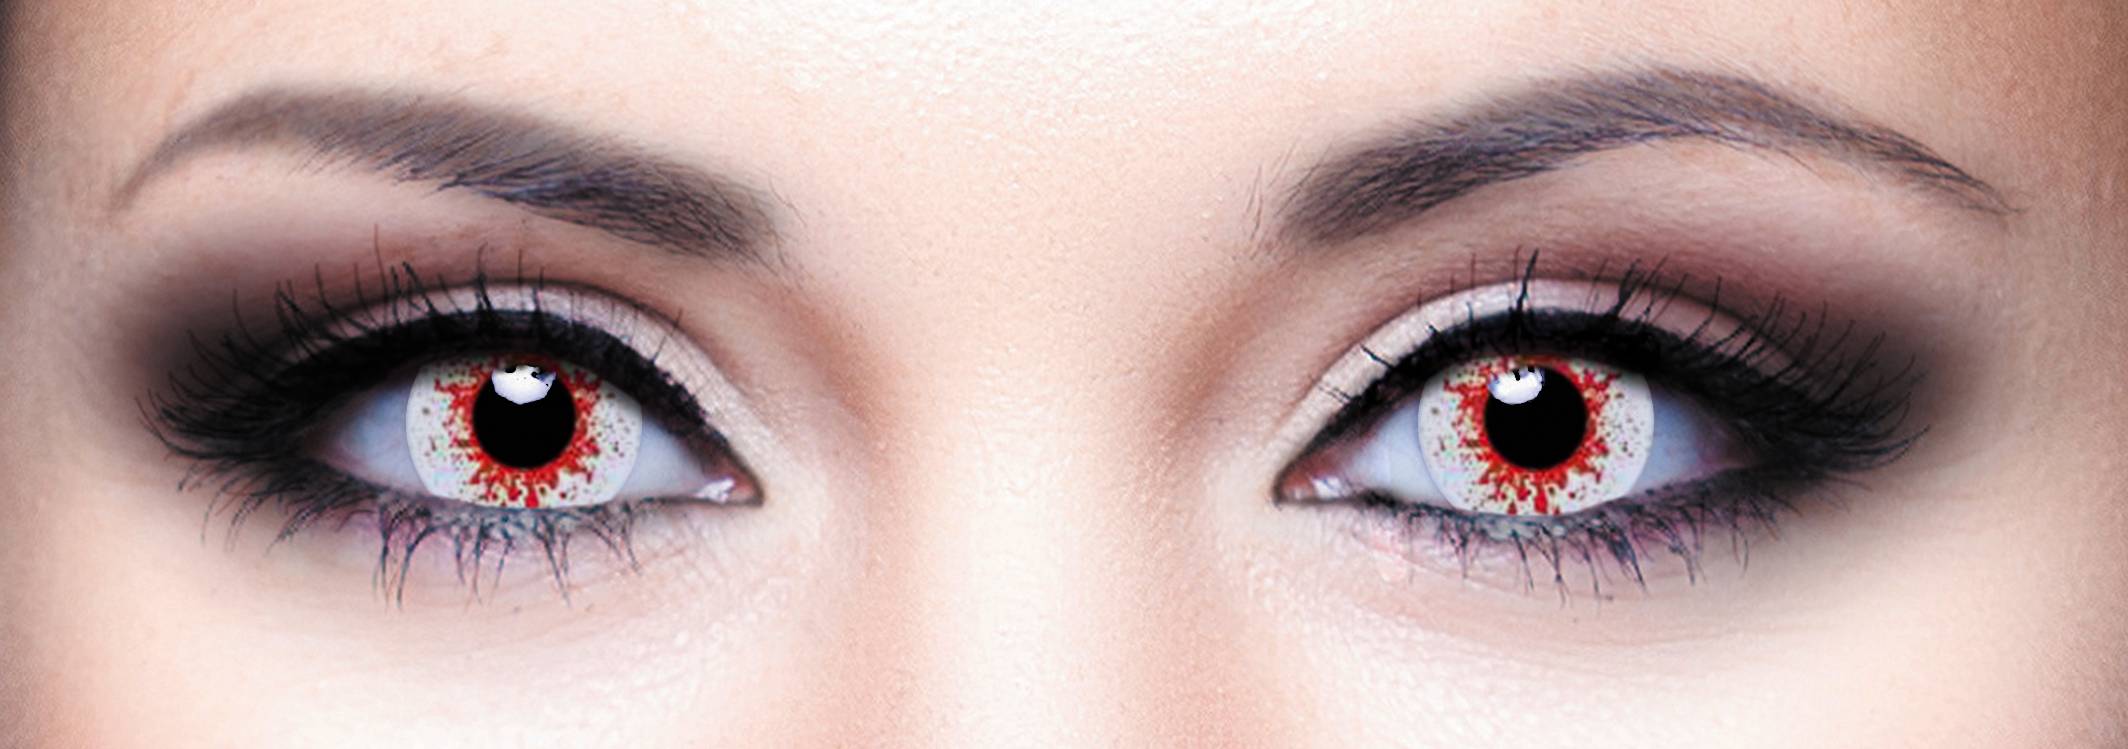 Как пользоваться линзами для глаз (контактными): как правильно начать применение, также правила и рекомендации по снятию, надеванию и уходу